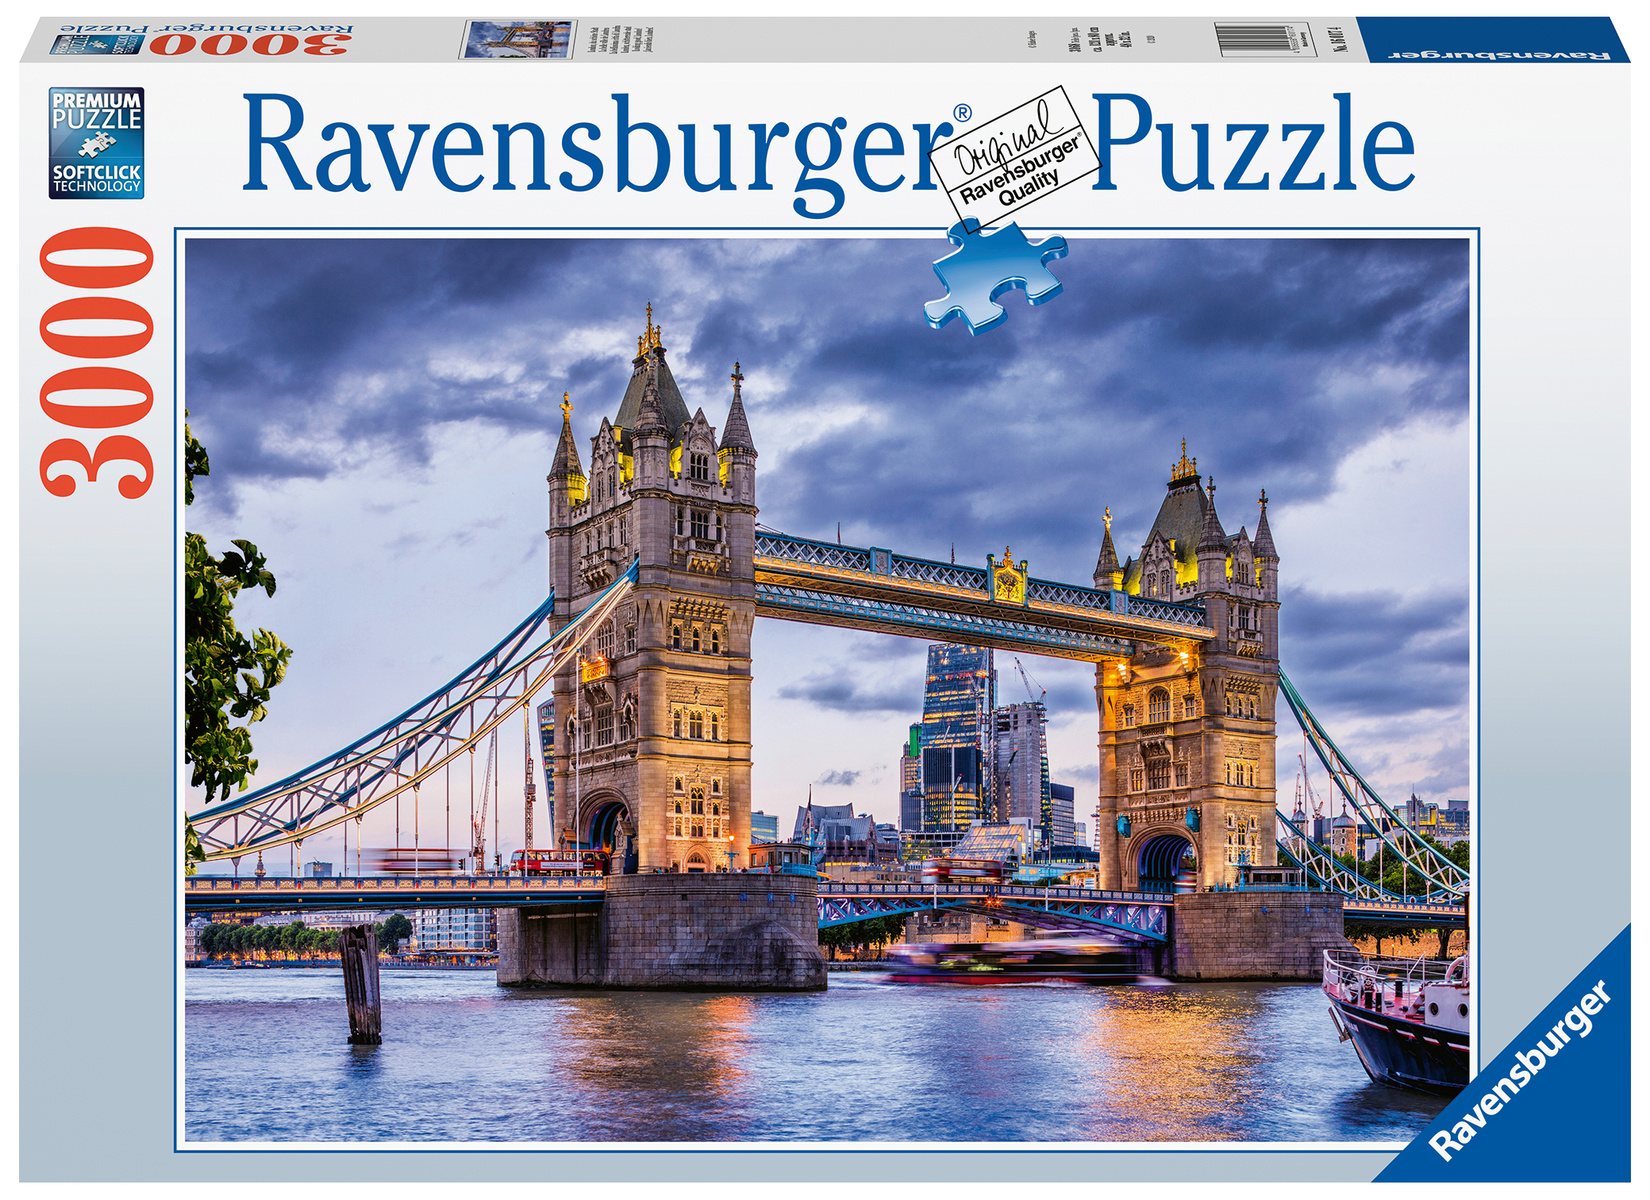 Voordelig Ravensburger puzzels Brede - Puzzels123